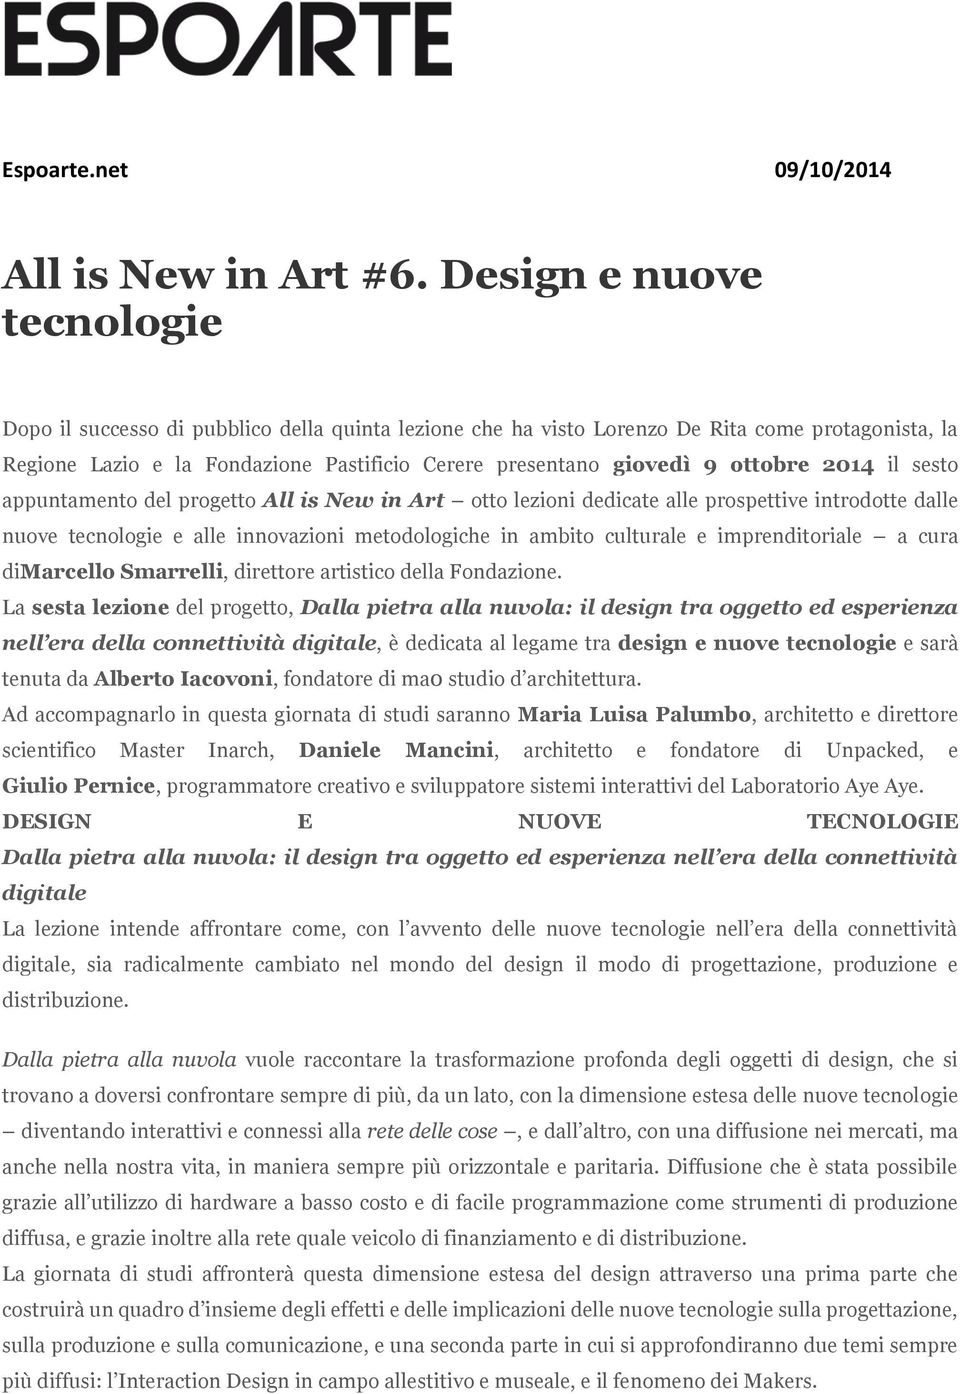 ottobre 2014 il sesto appuntamento del progetto All is New in Art otto lezioni dedicate alle prospettive introdotte dalle nuove tecnologie e alle innovazioni metodologiche in ambito culturale e